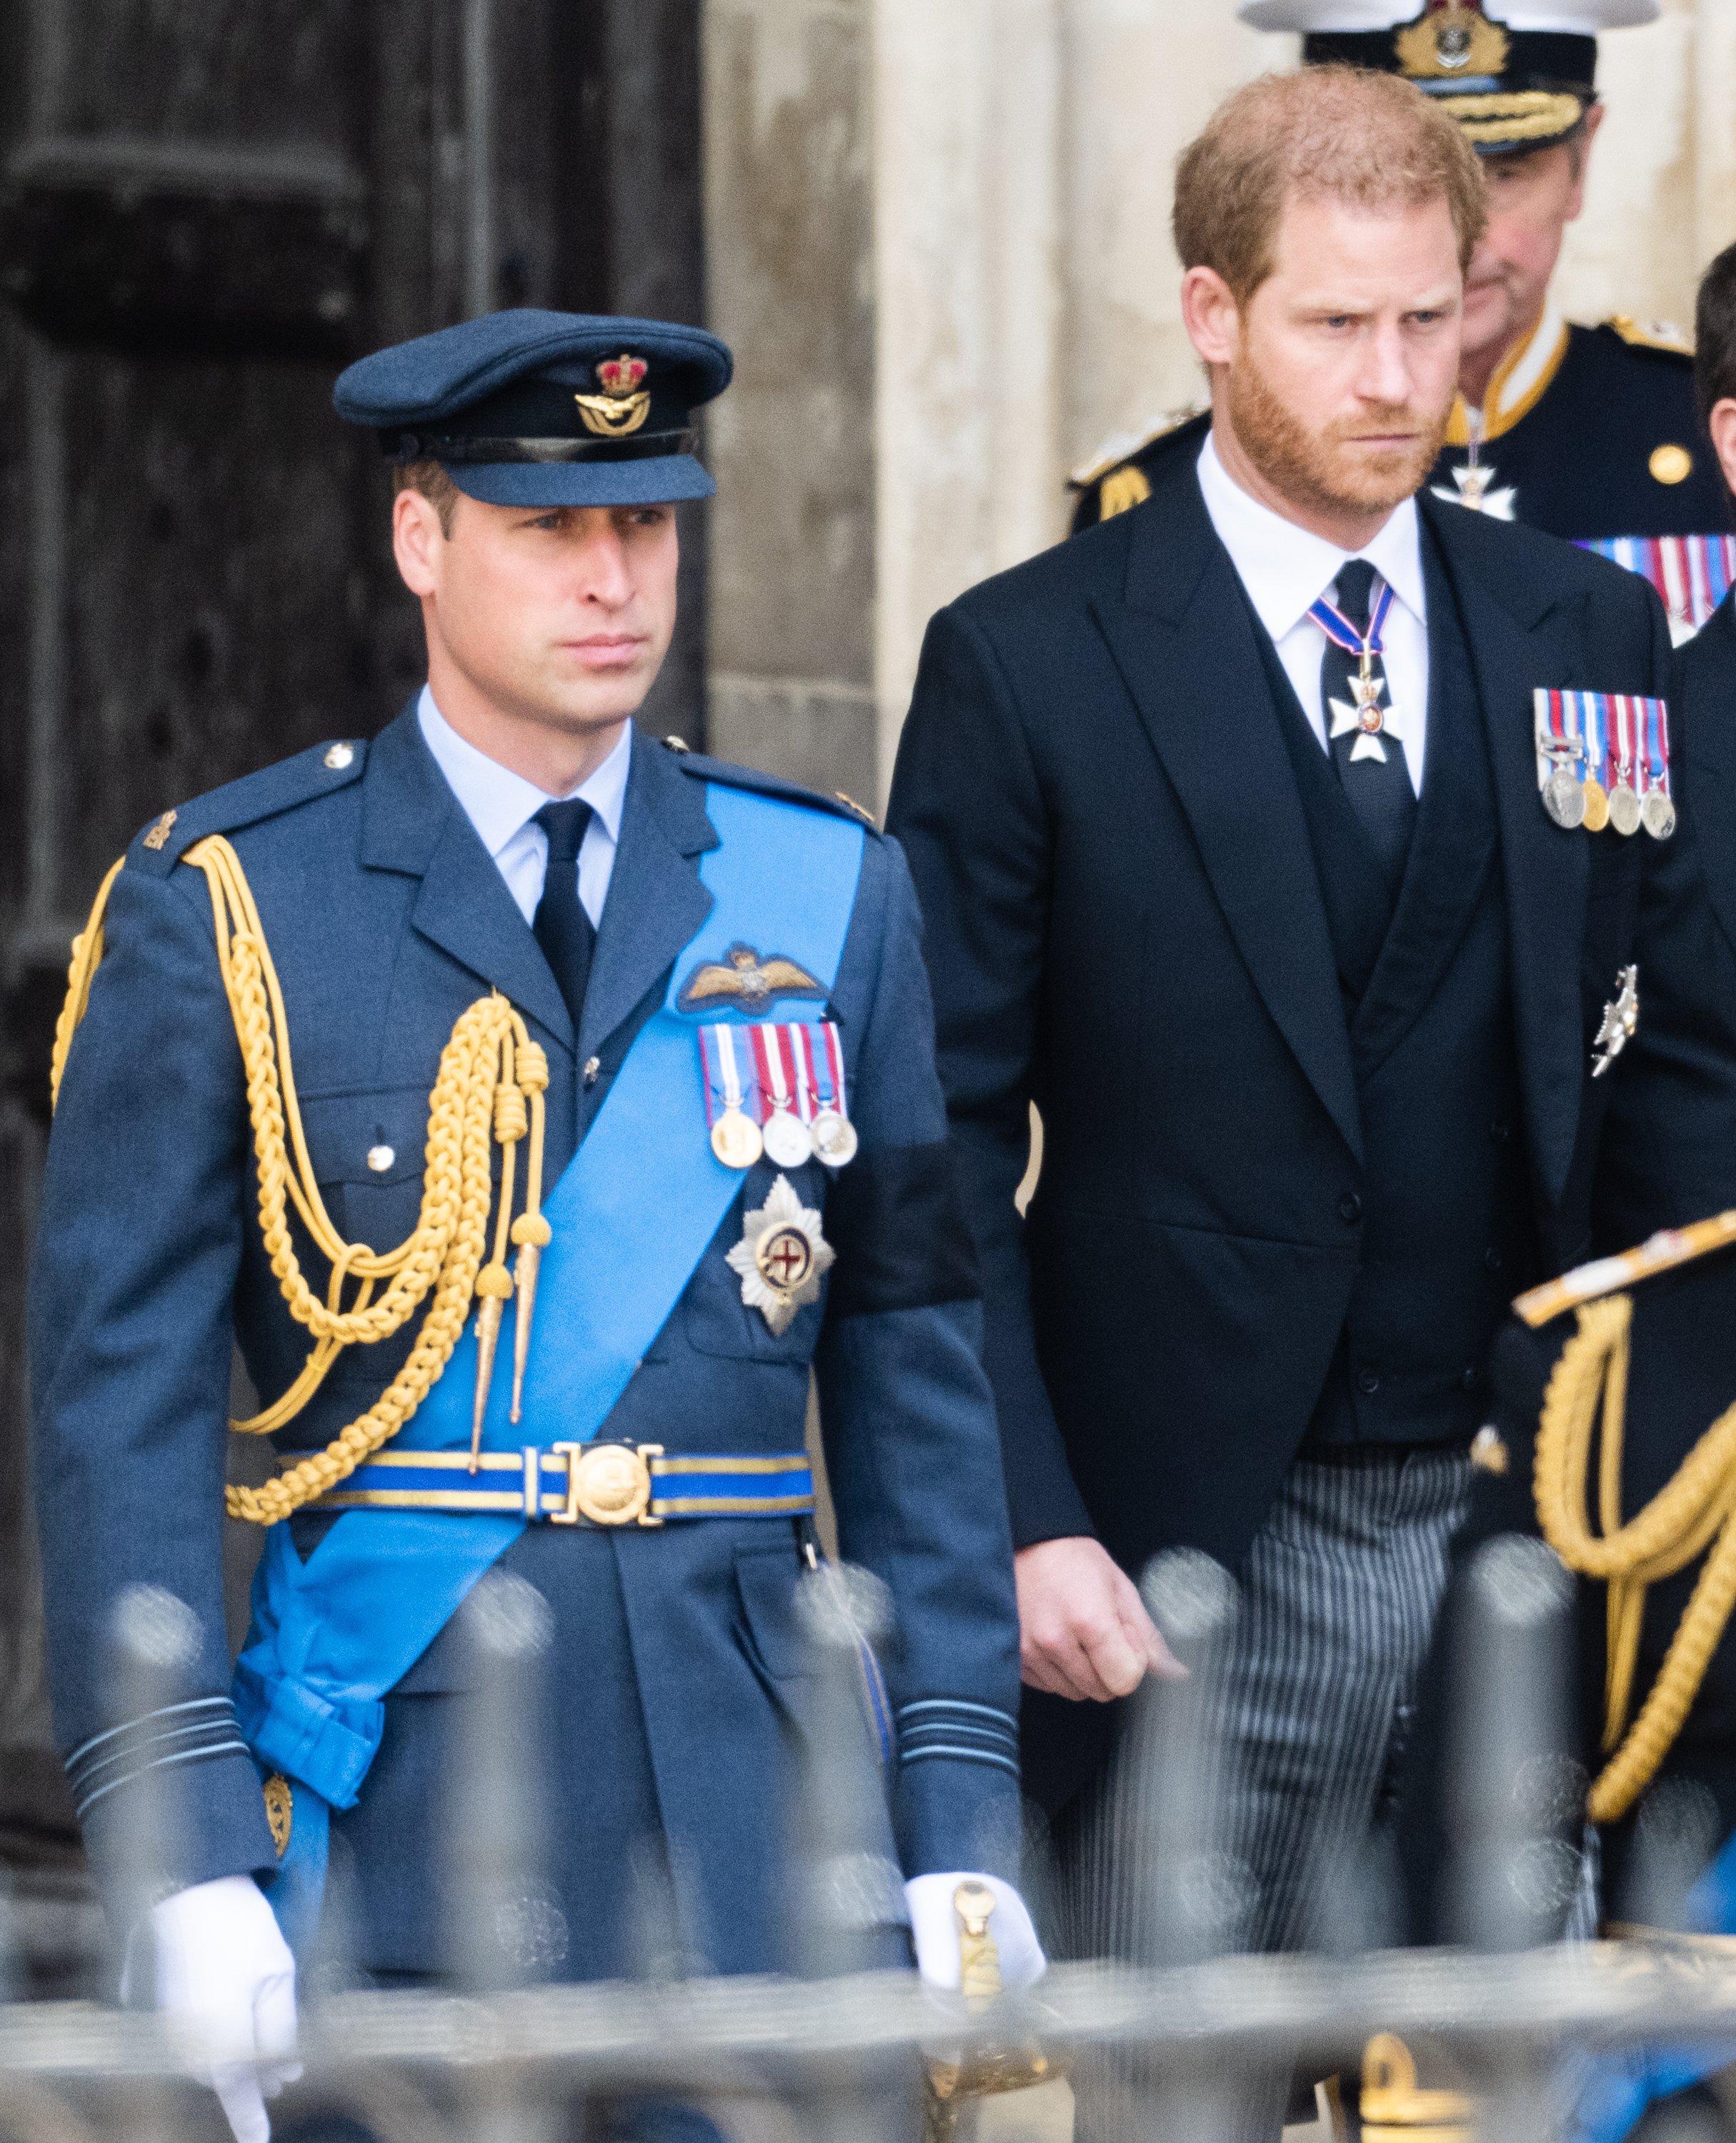 El príncipe William y el príncipe Harry durante el funeral de estado de la reina Elizabeth II en la Abadía de Westminster, el 19 de septiembre de 2022 en Londres, Inglaterra. | Foto: Getty Images